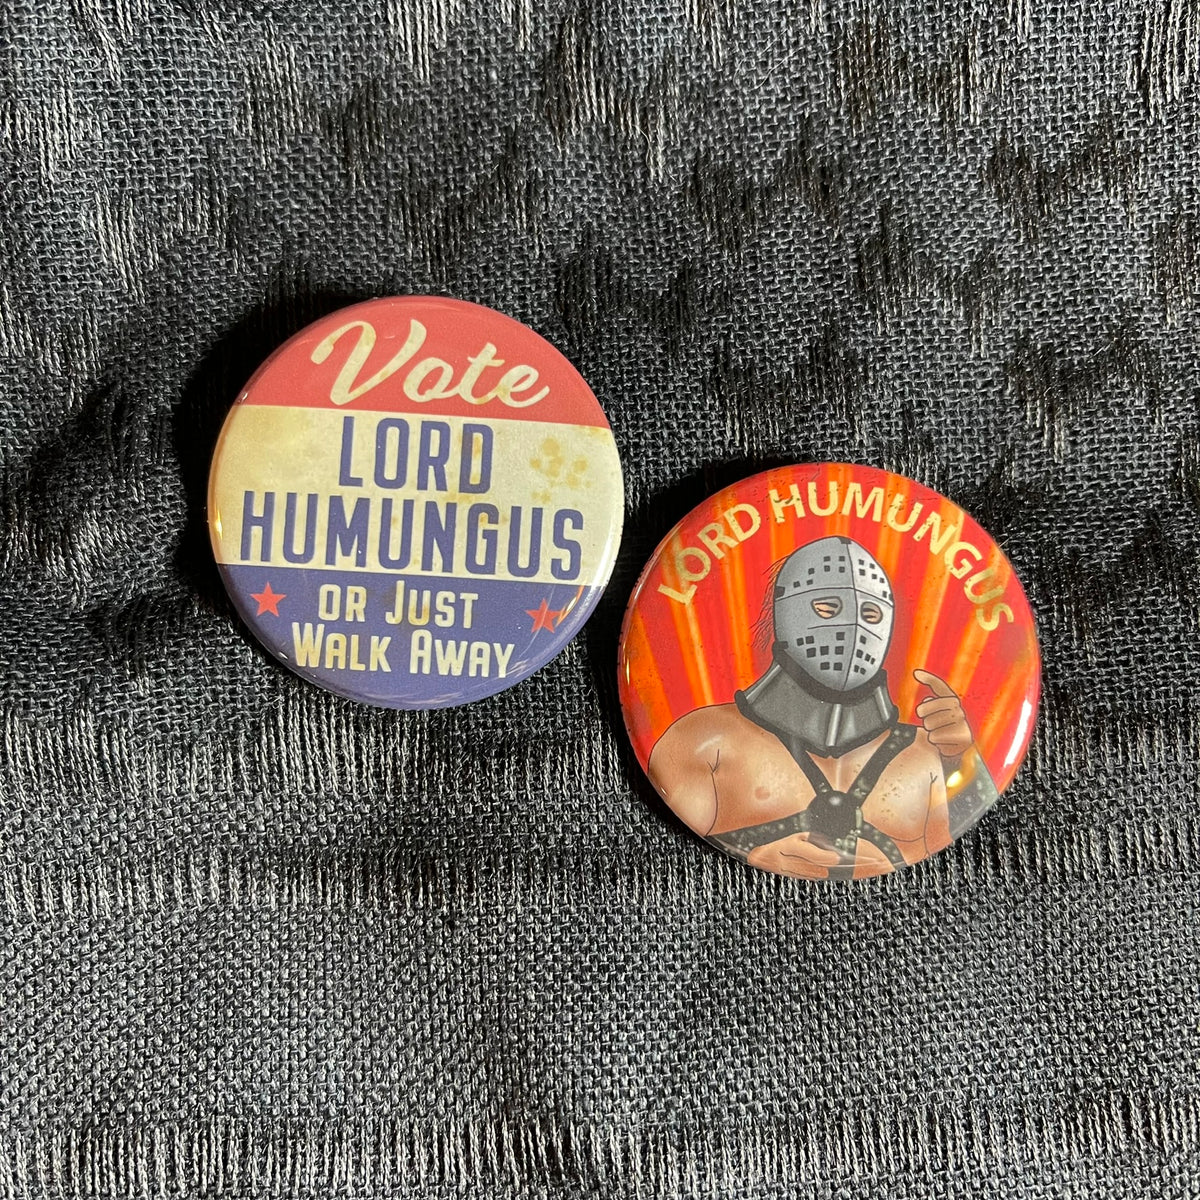 VOTE Lord Humungus! 2 Pinback Button Set!